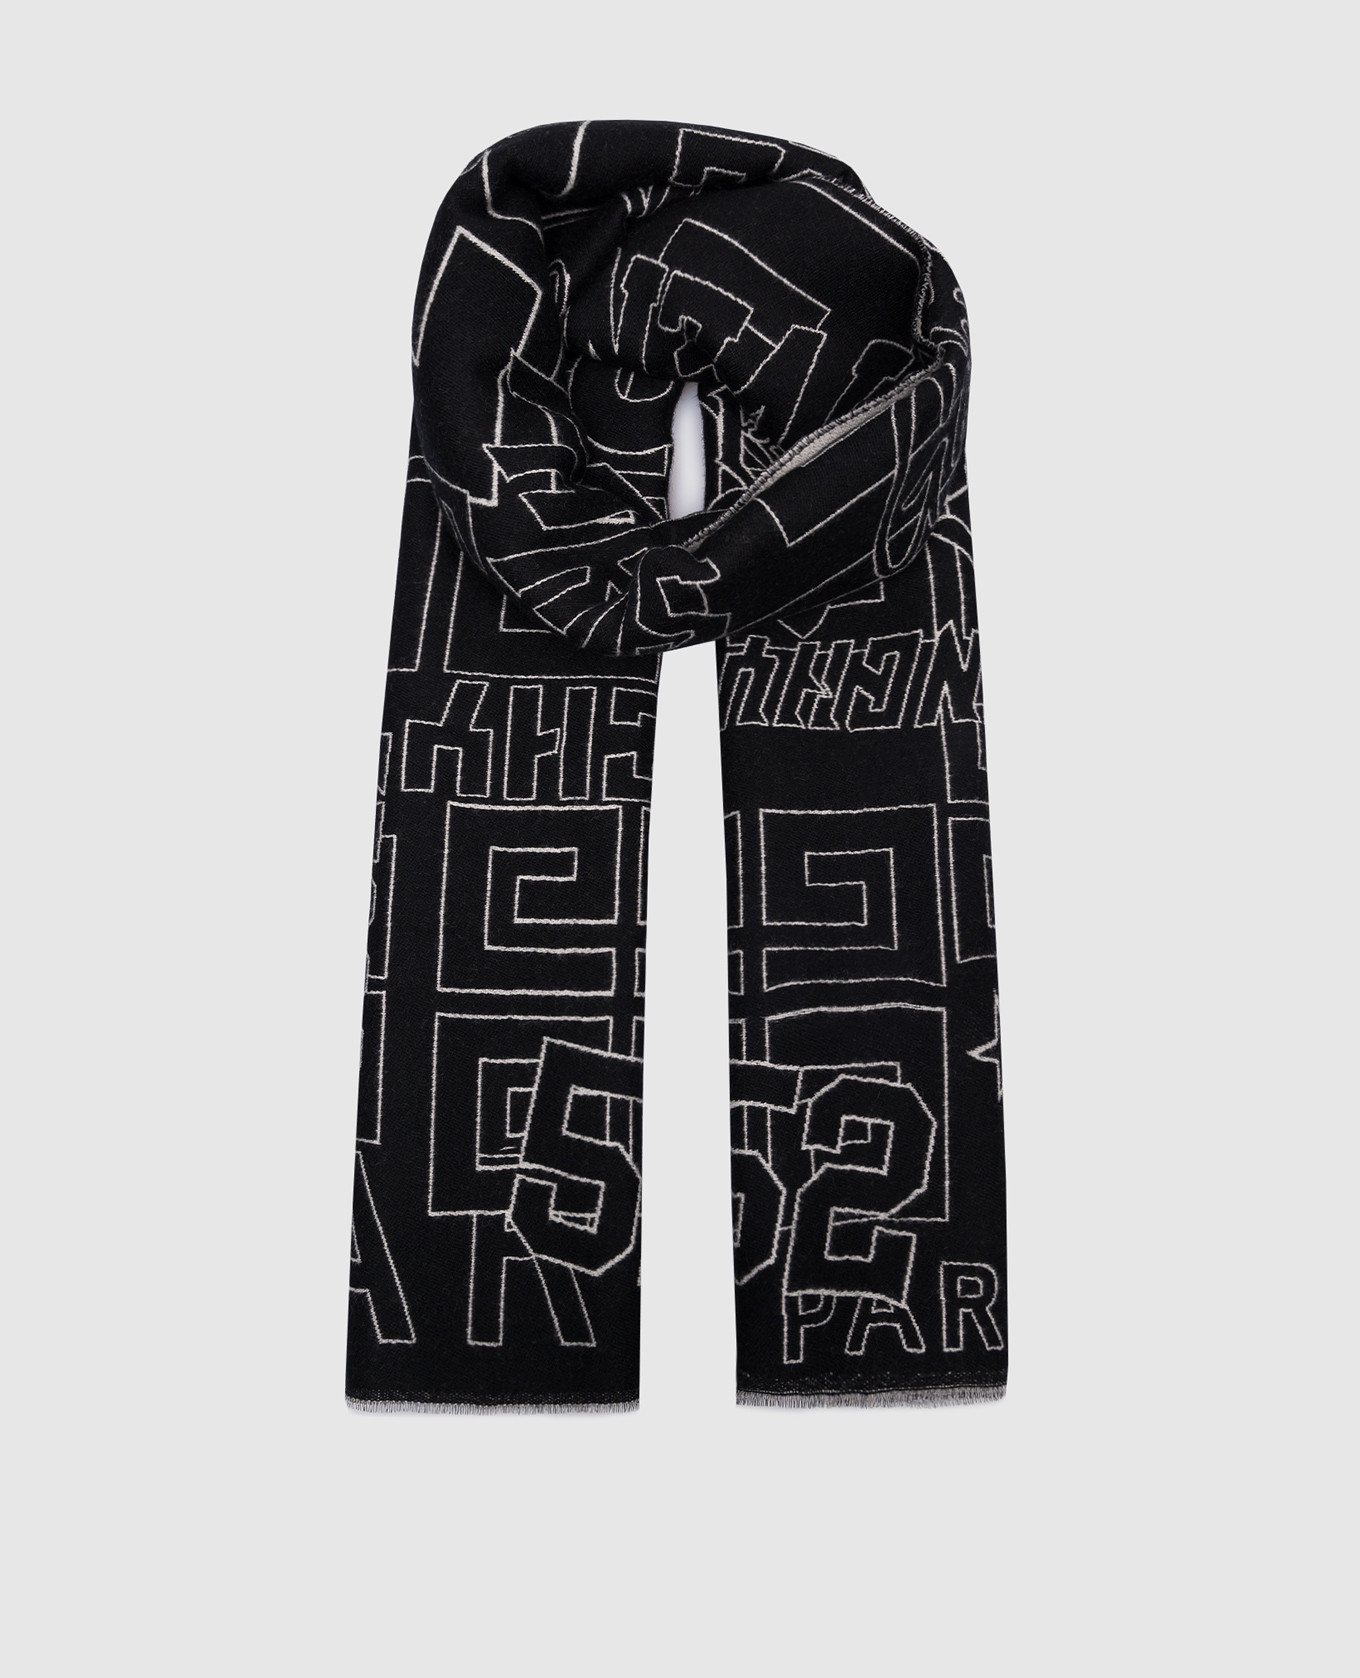 Черный шарф из шерсти и шелка в брендированном узоре.